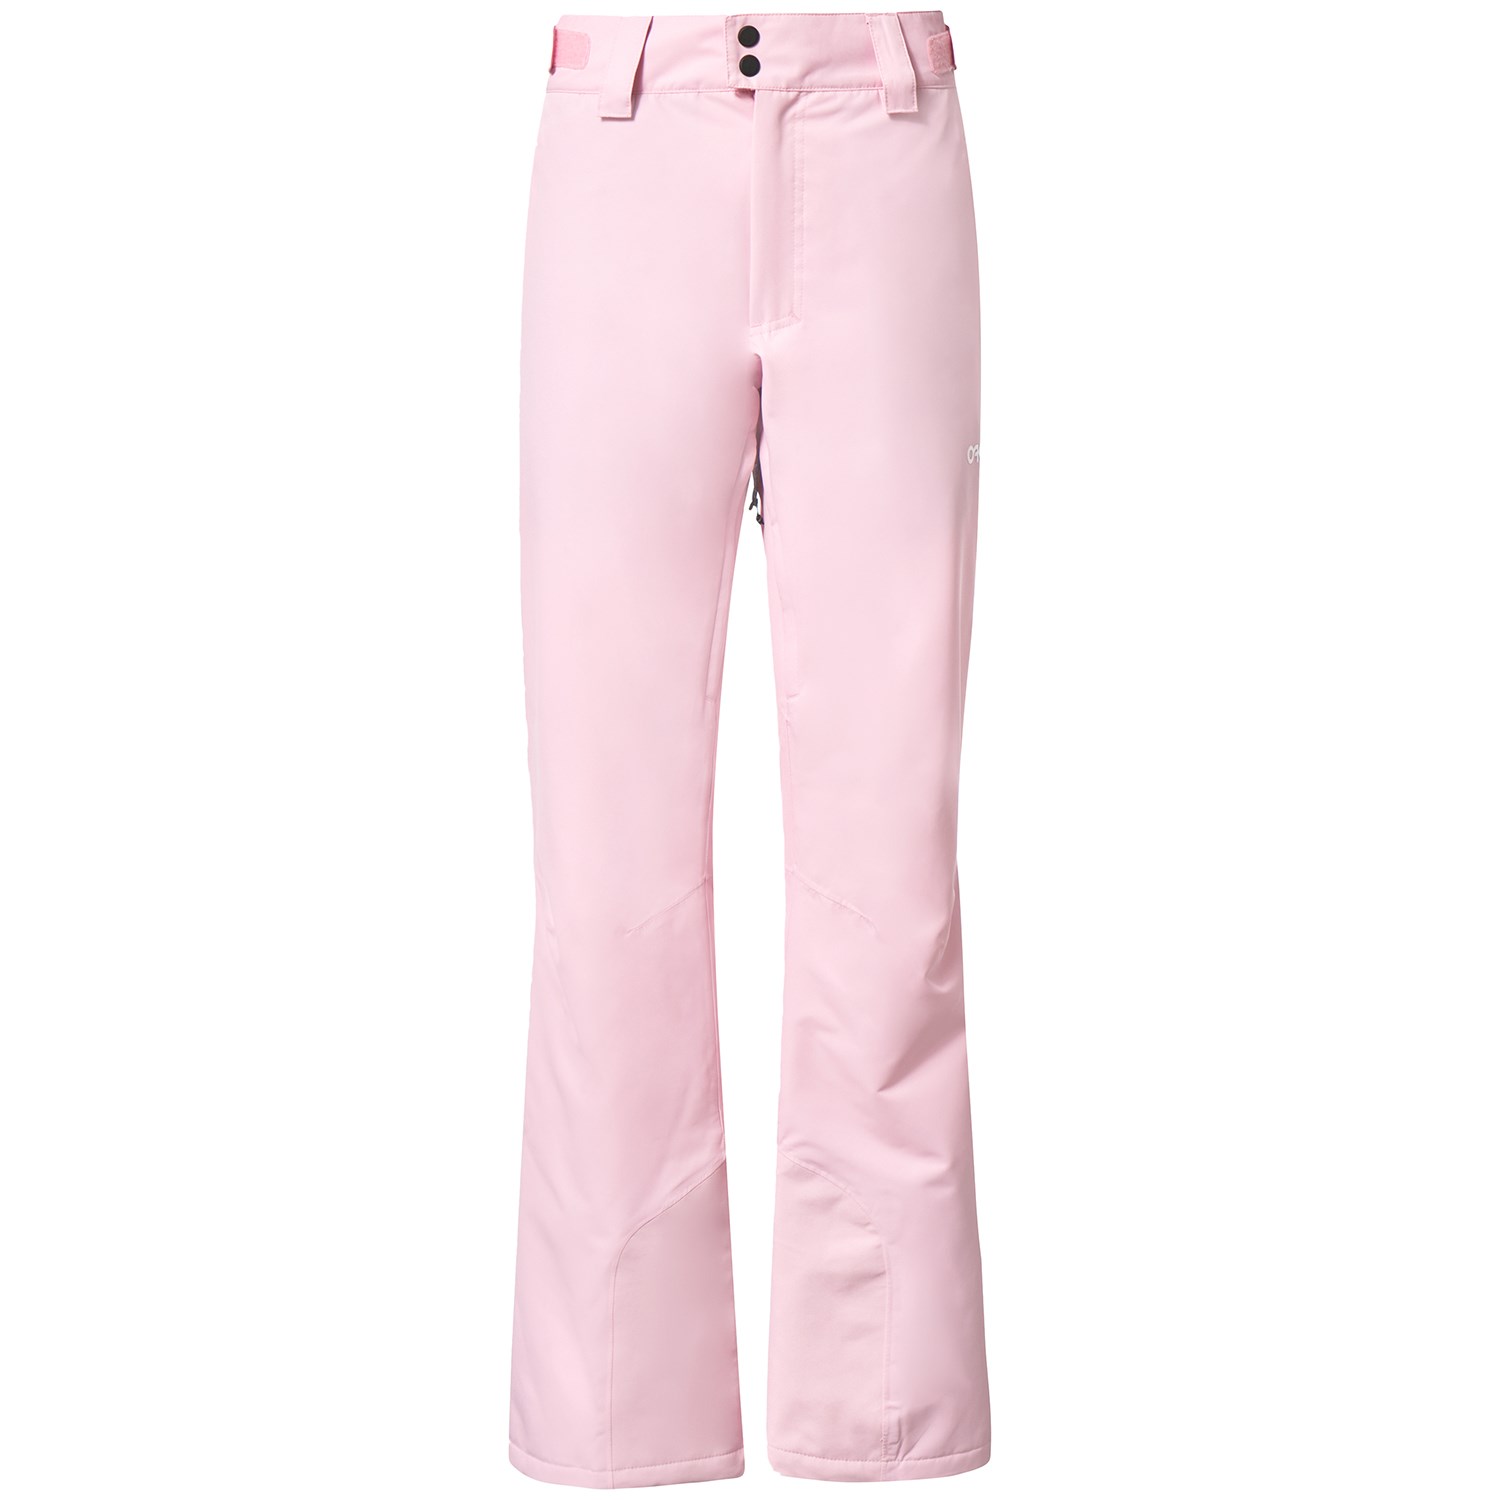 Брюки утепленные Oakley Jasmine женские, розовый finn flare брюки утепленные женские